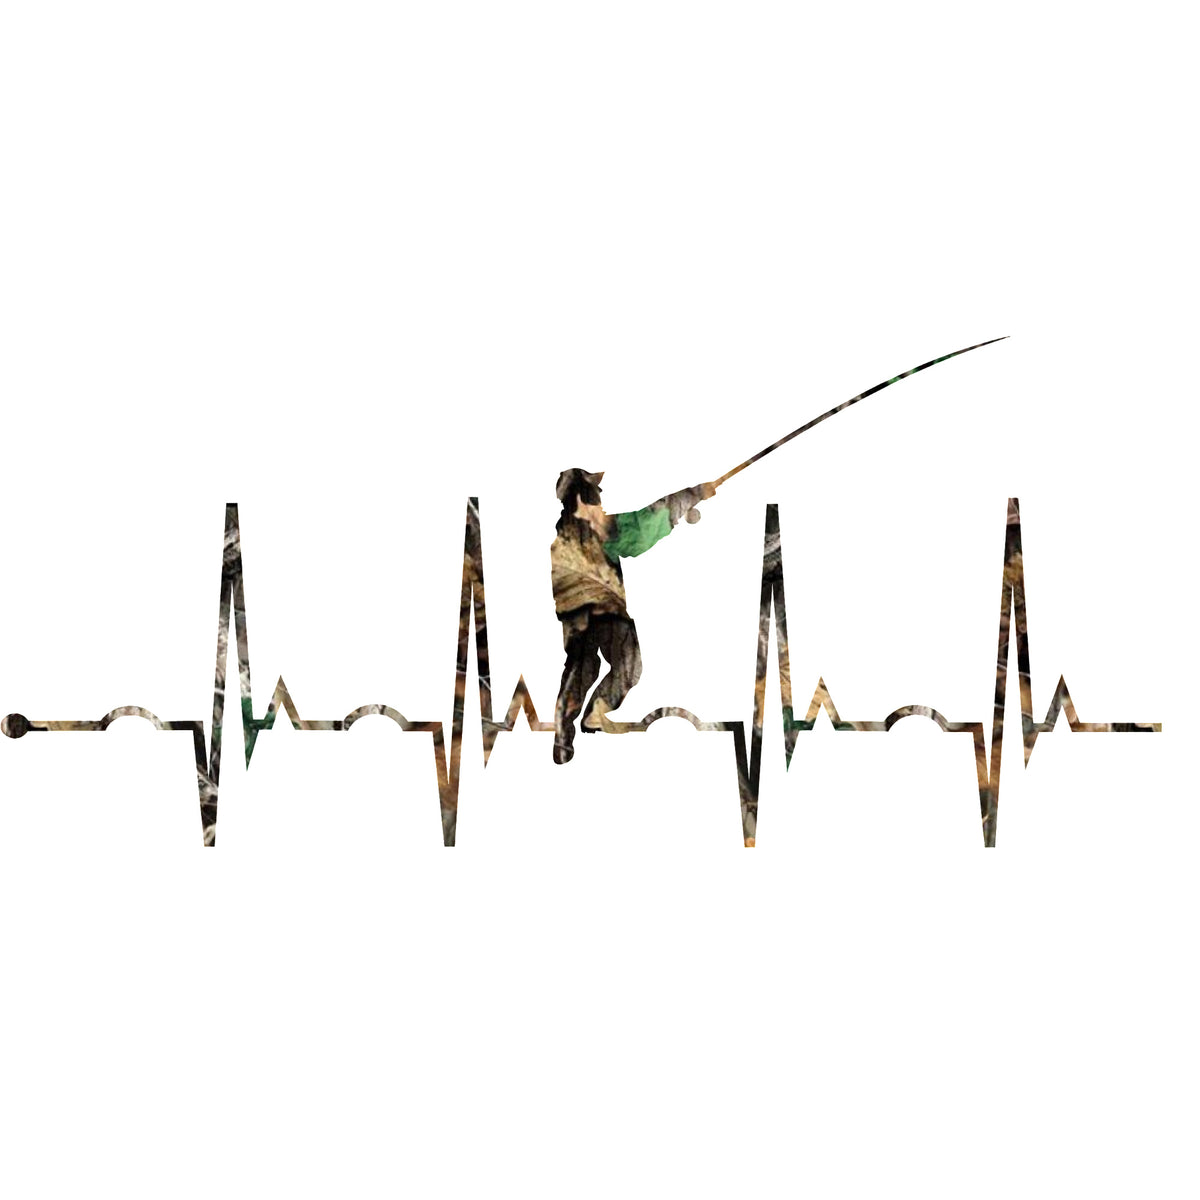 Fishing Hook Heartbeat Decal Vinyl Sticker